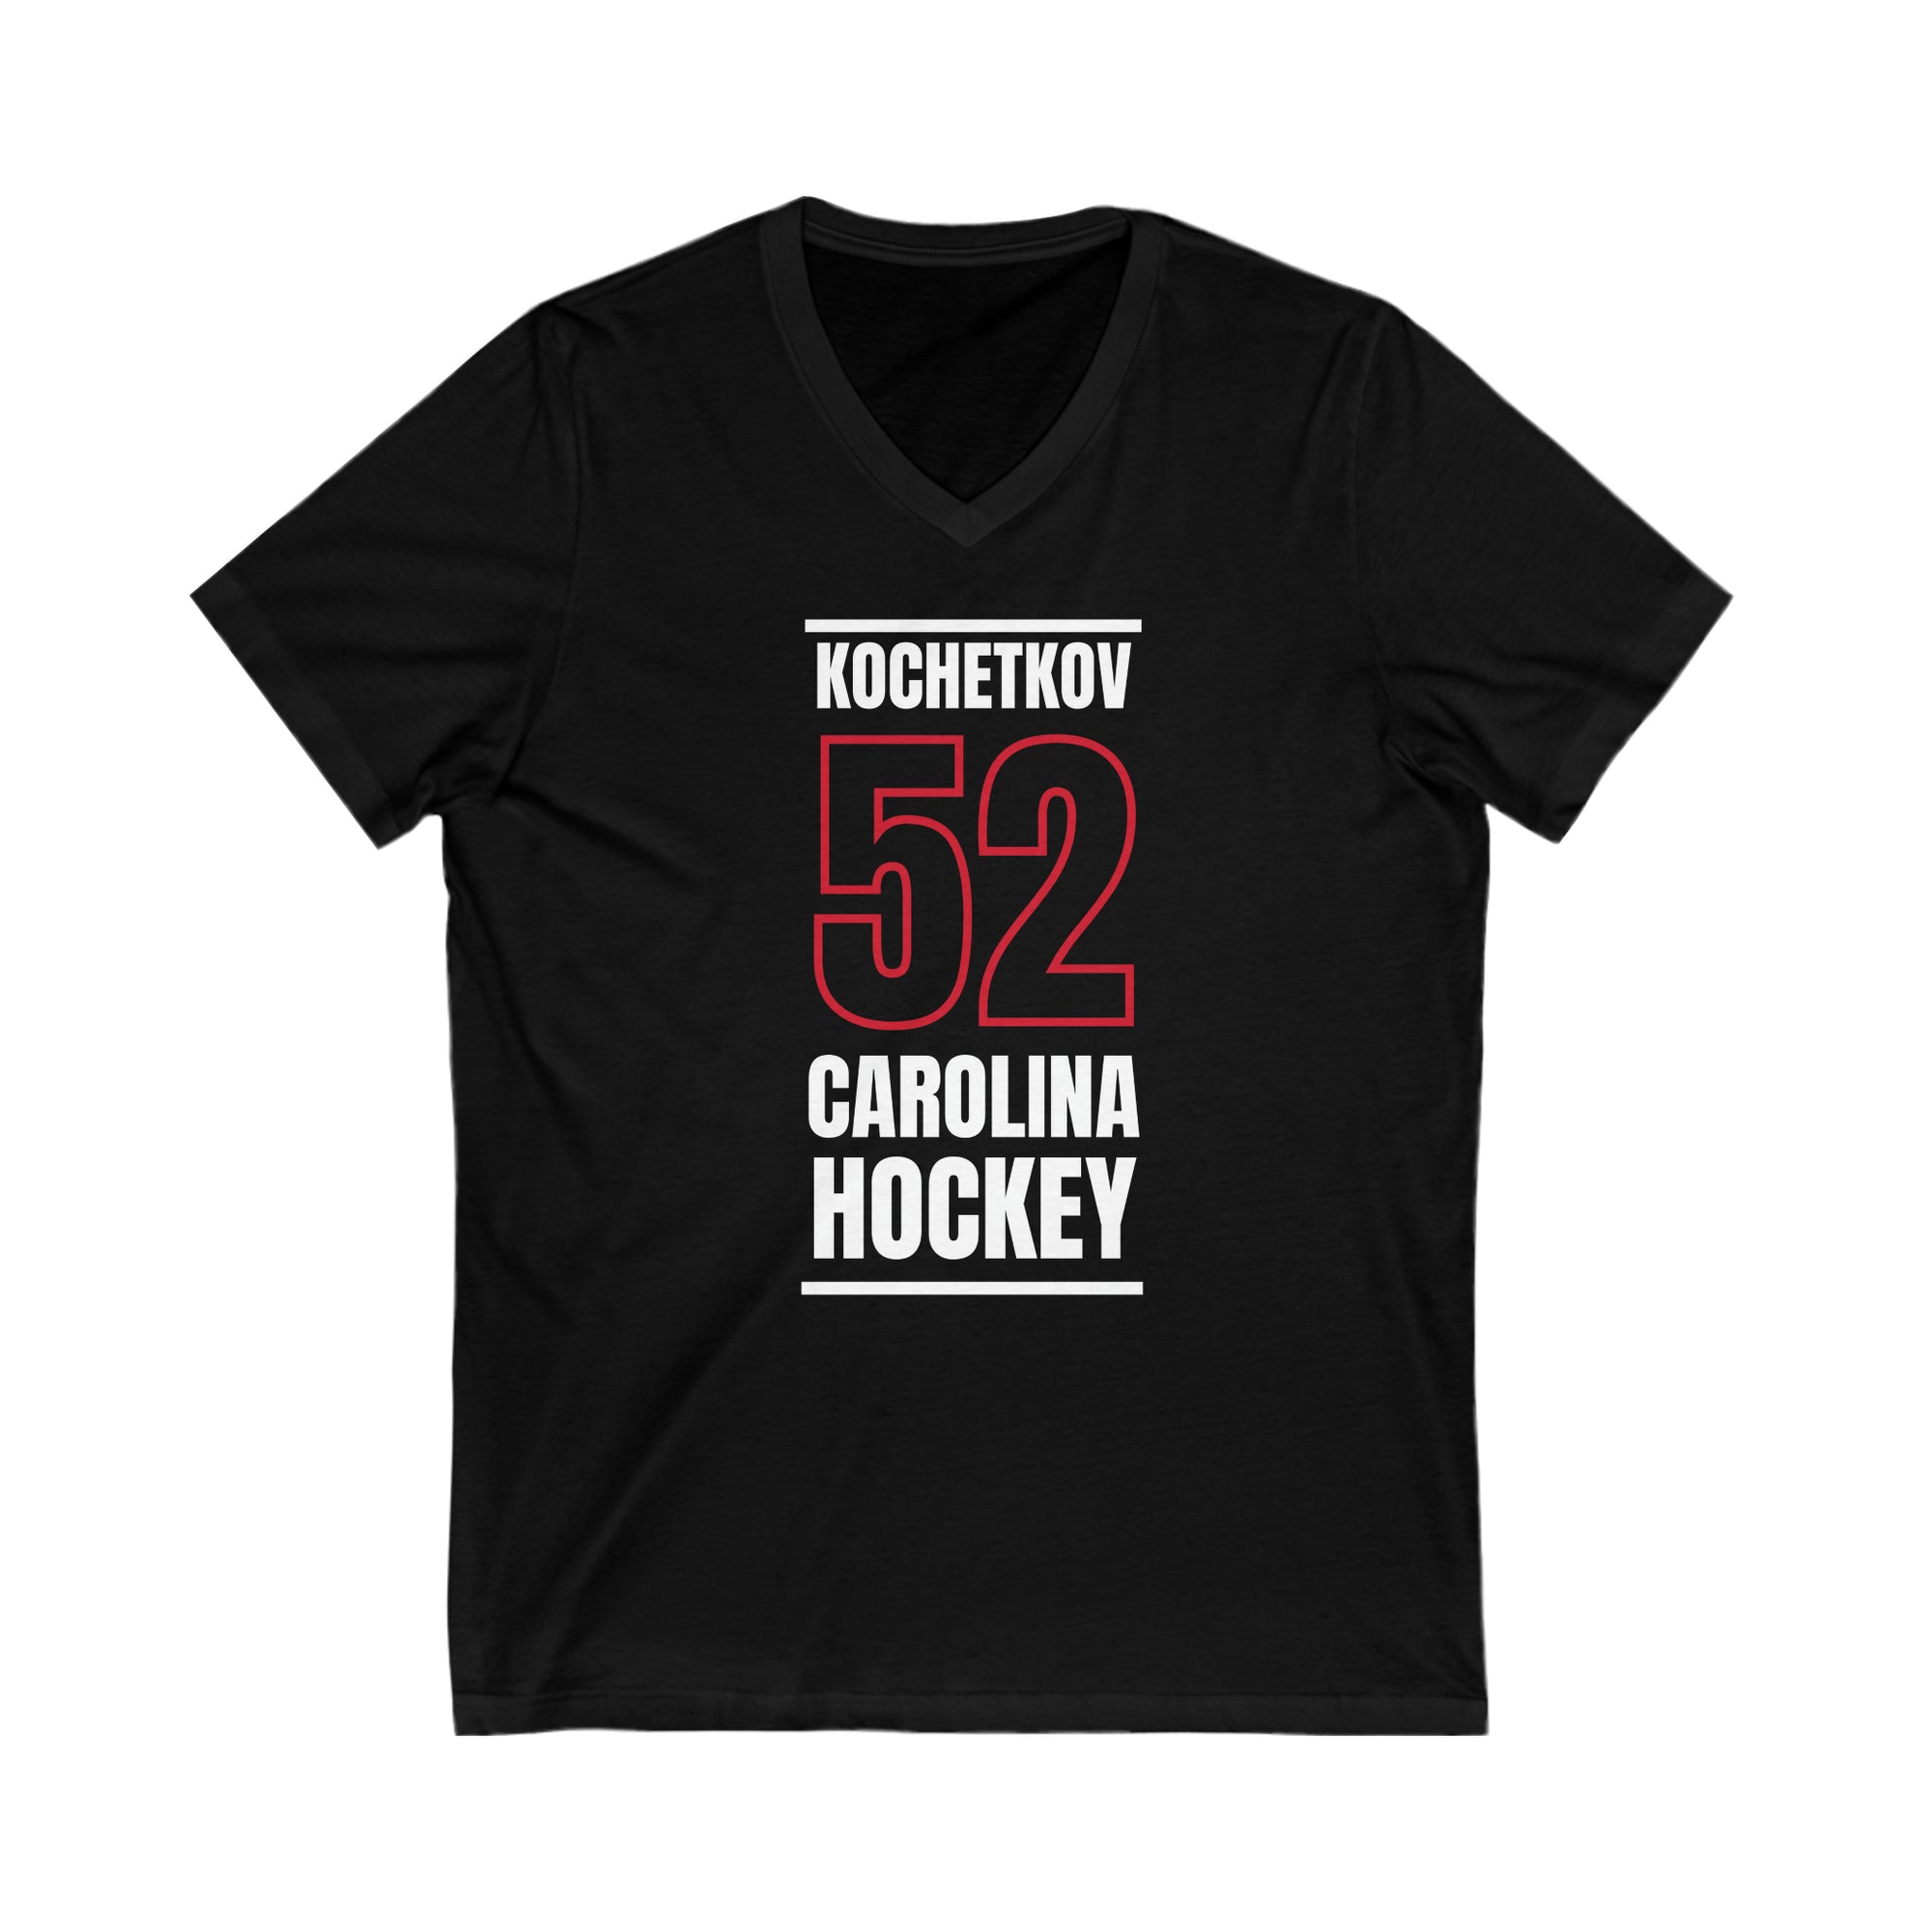 Kochetkov 52 Carolina Hockey Black Vertical Design Unisex V-Neck Tee